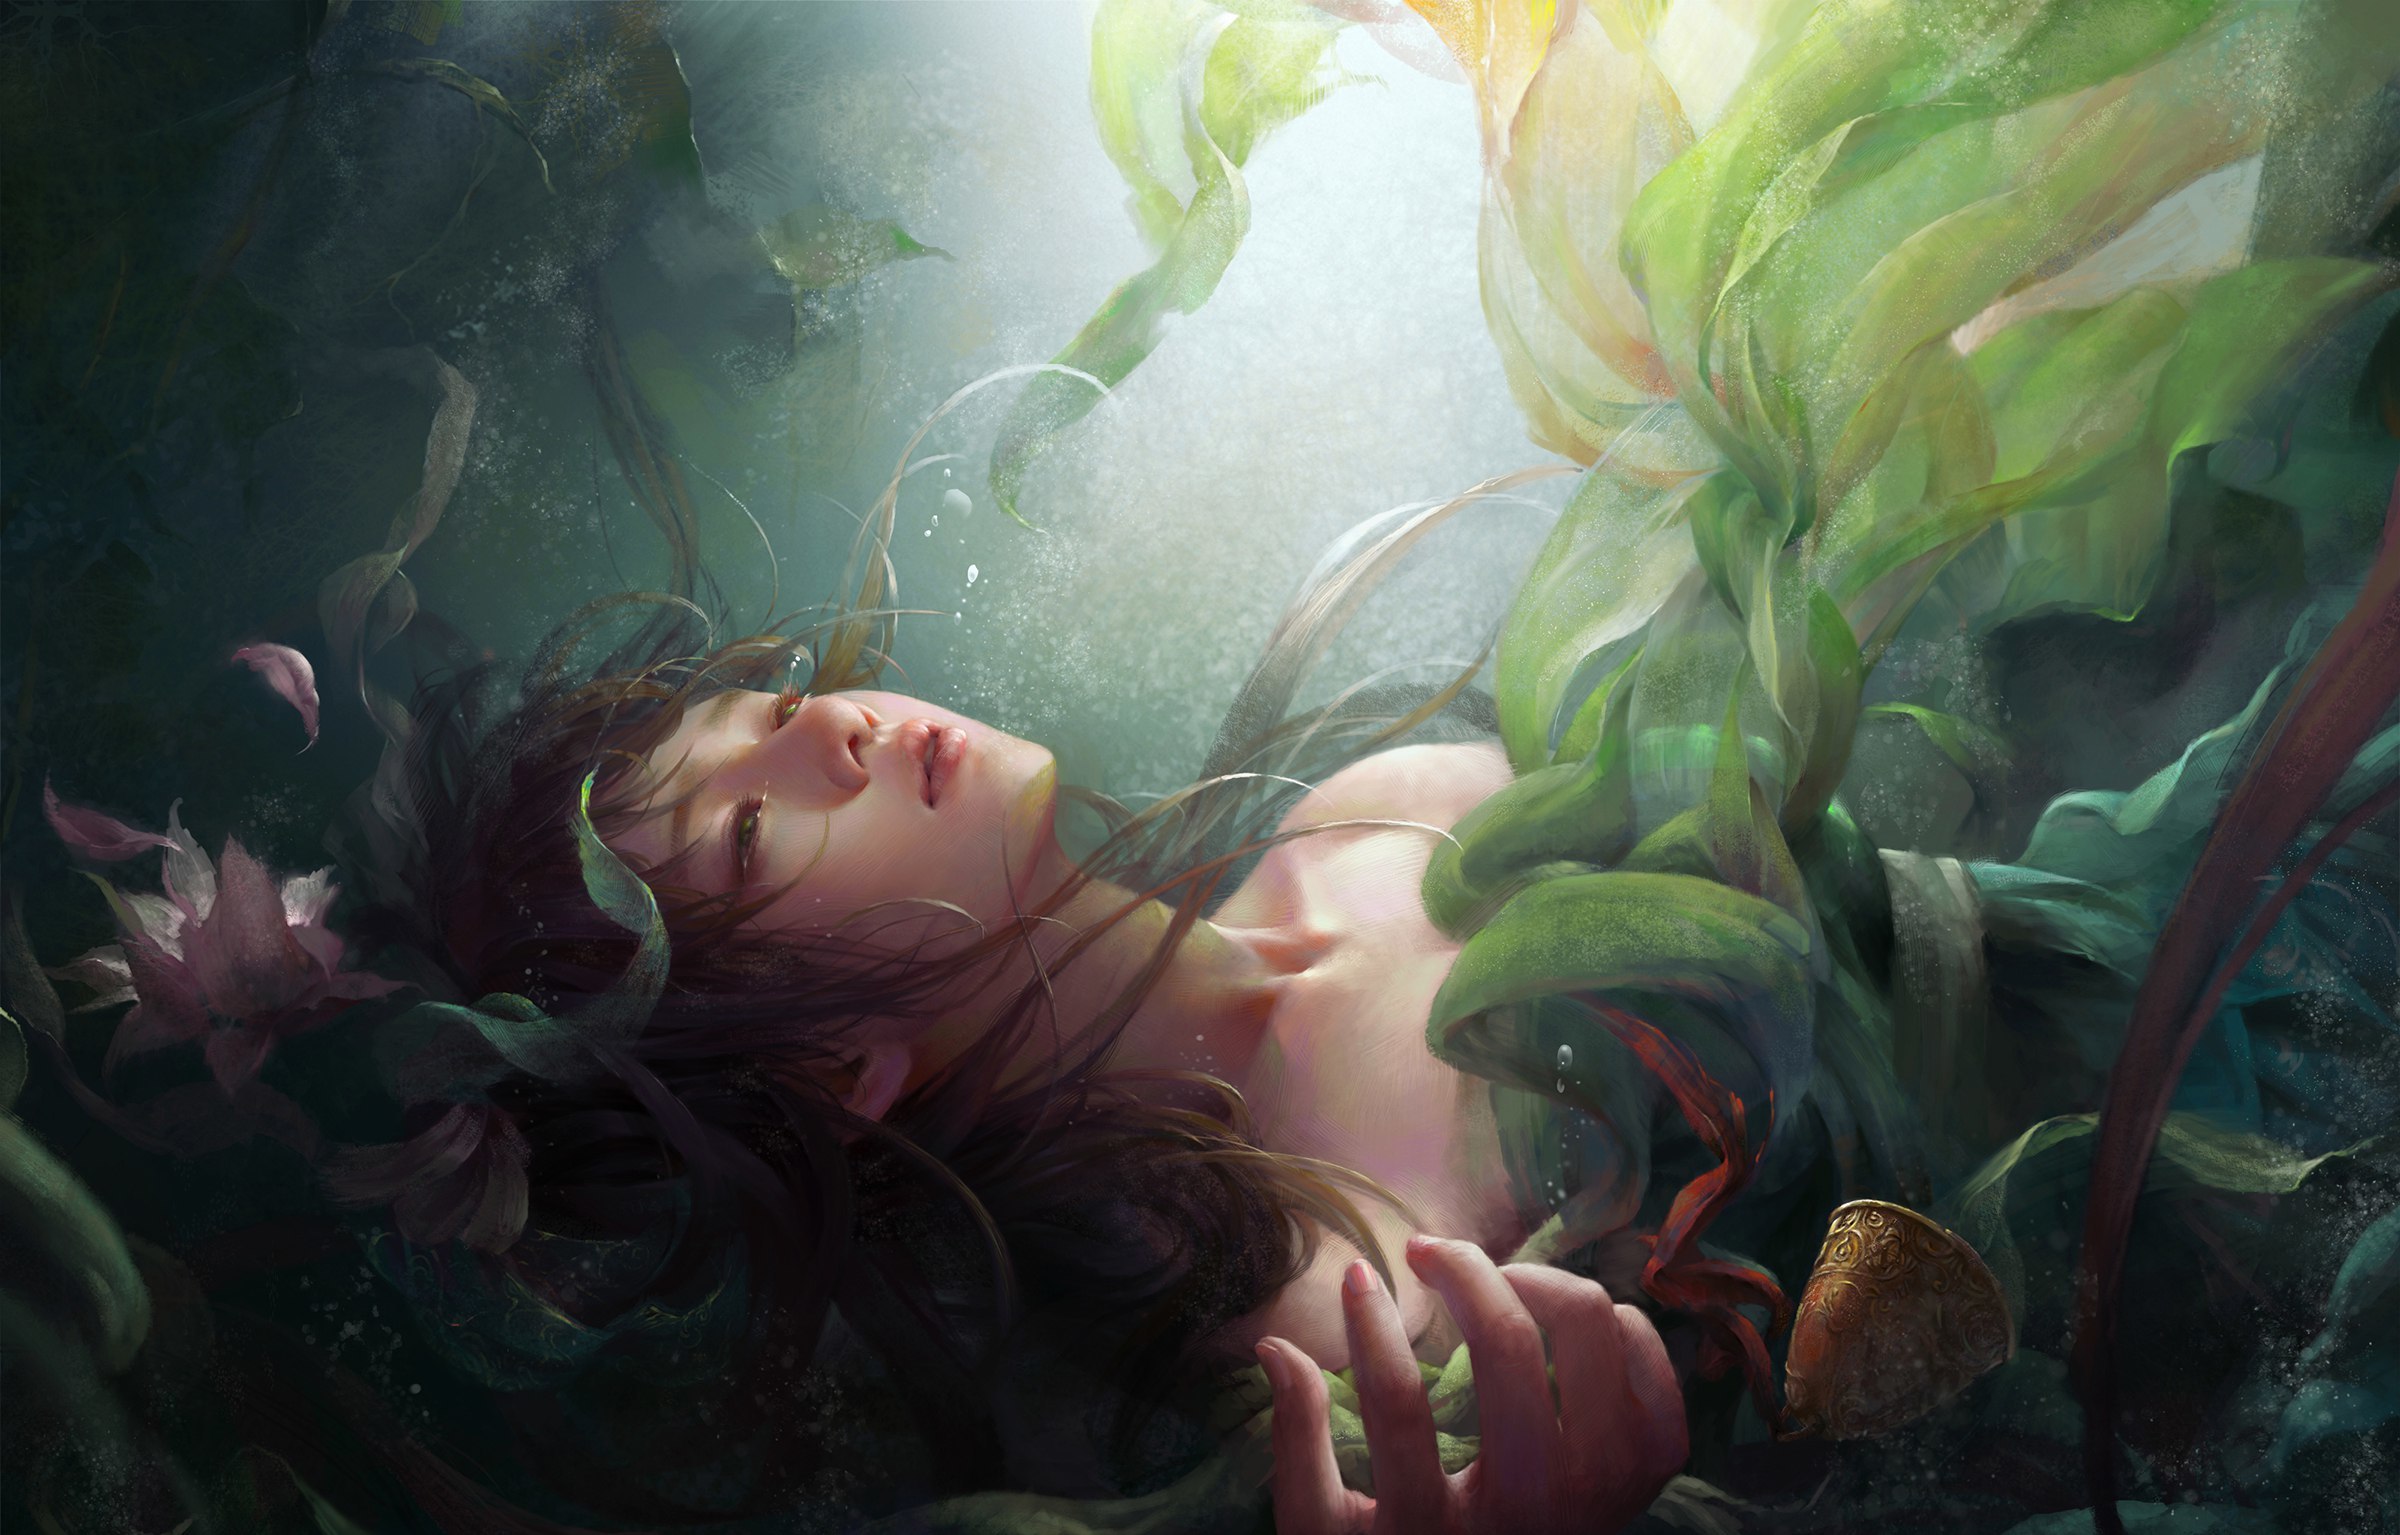 Утопленник во сне. Helga Helleborus художник. Русалка под водой. Девушка в водорослях. Девушка в воде арт.